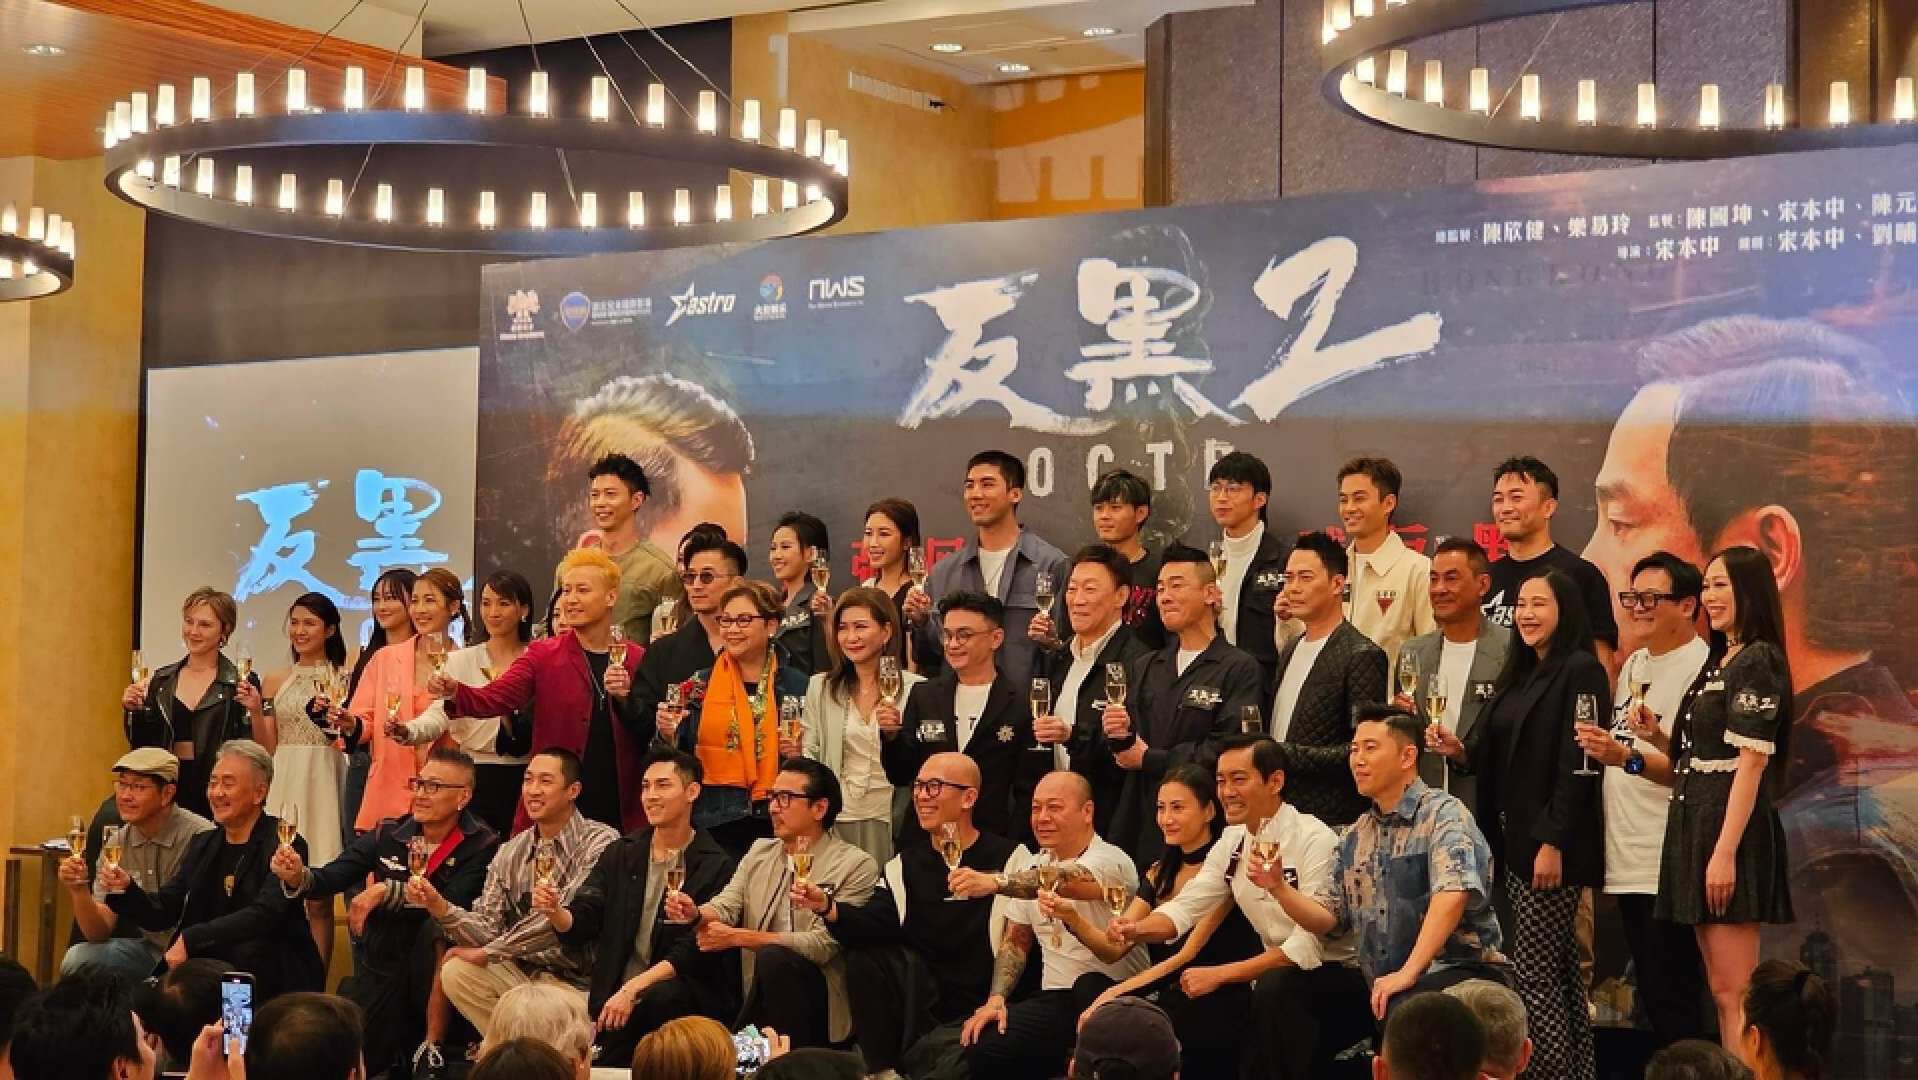 期待！又一全新港剧宣布开拍，投资2亿，TVB高层携旗下艺人加盟  第1张